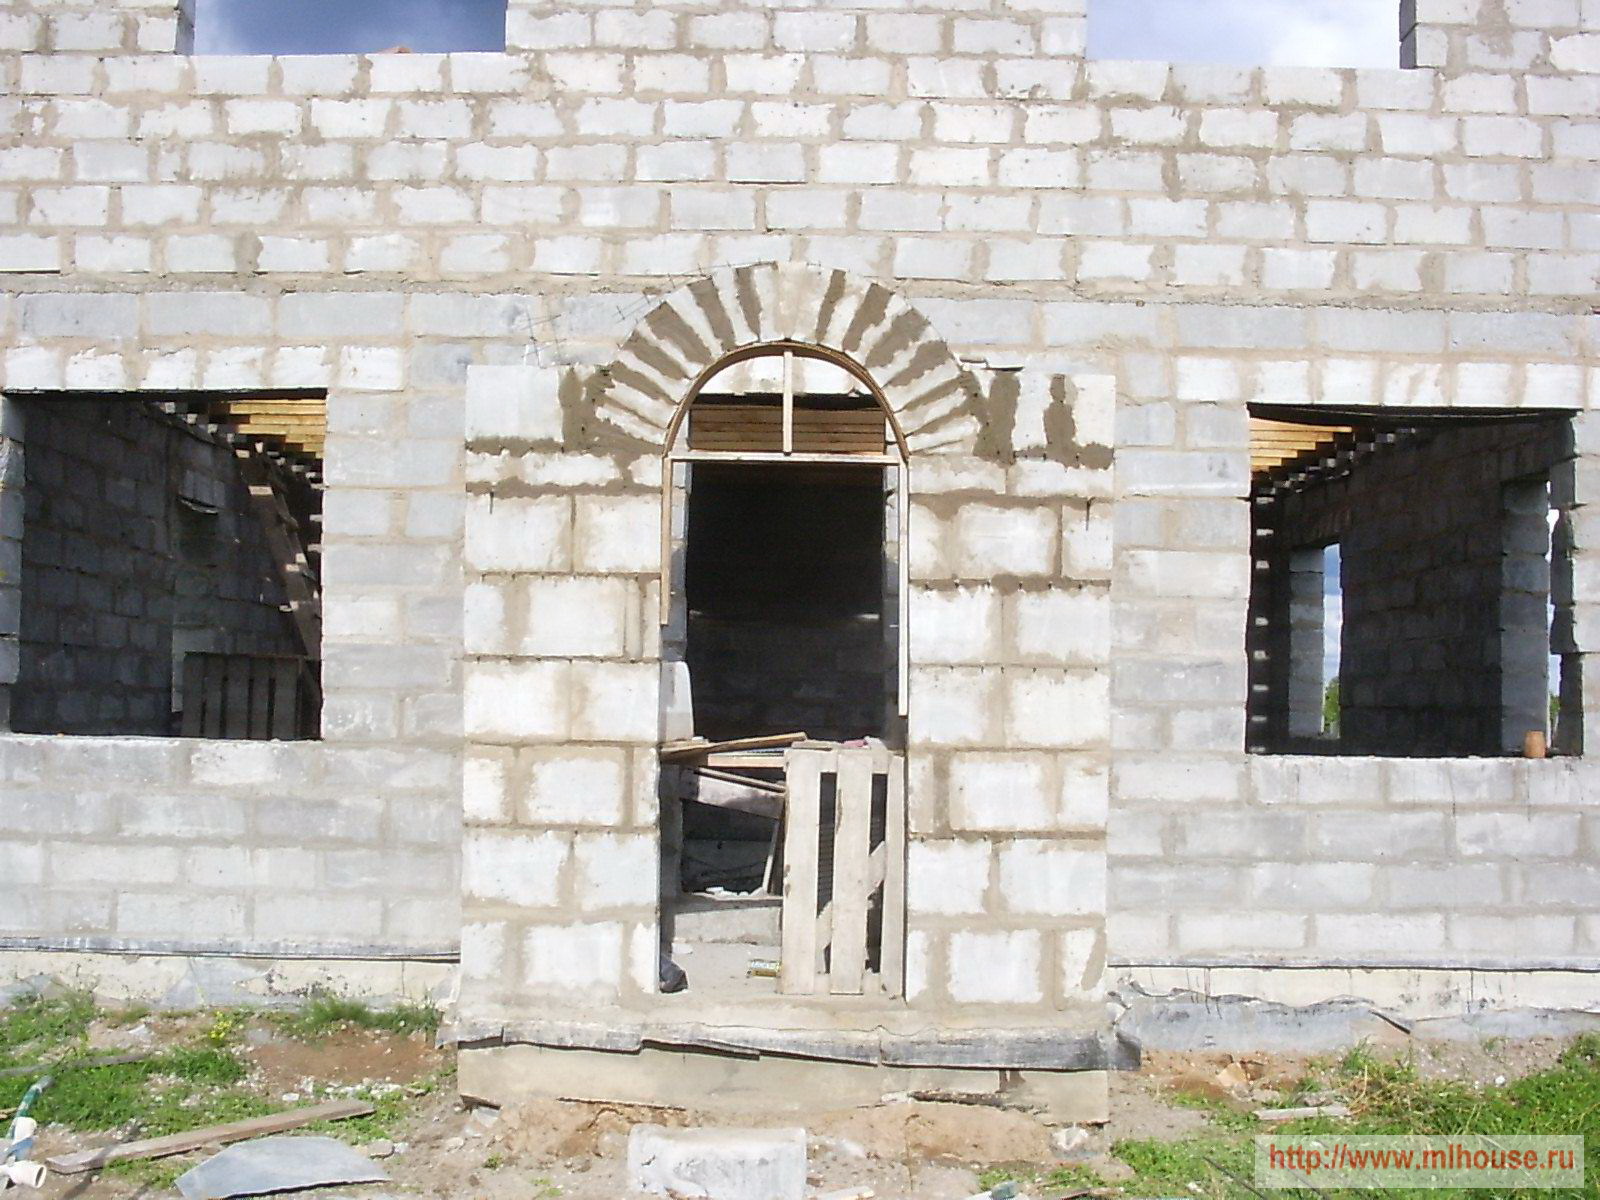 Монтаж конструкций и отливка арочной перемычки стены